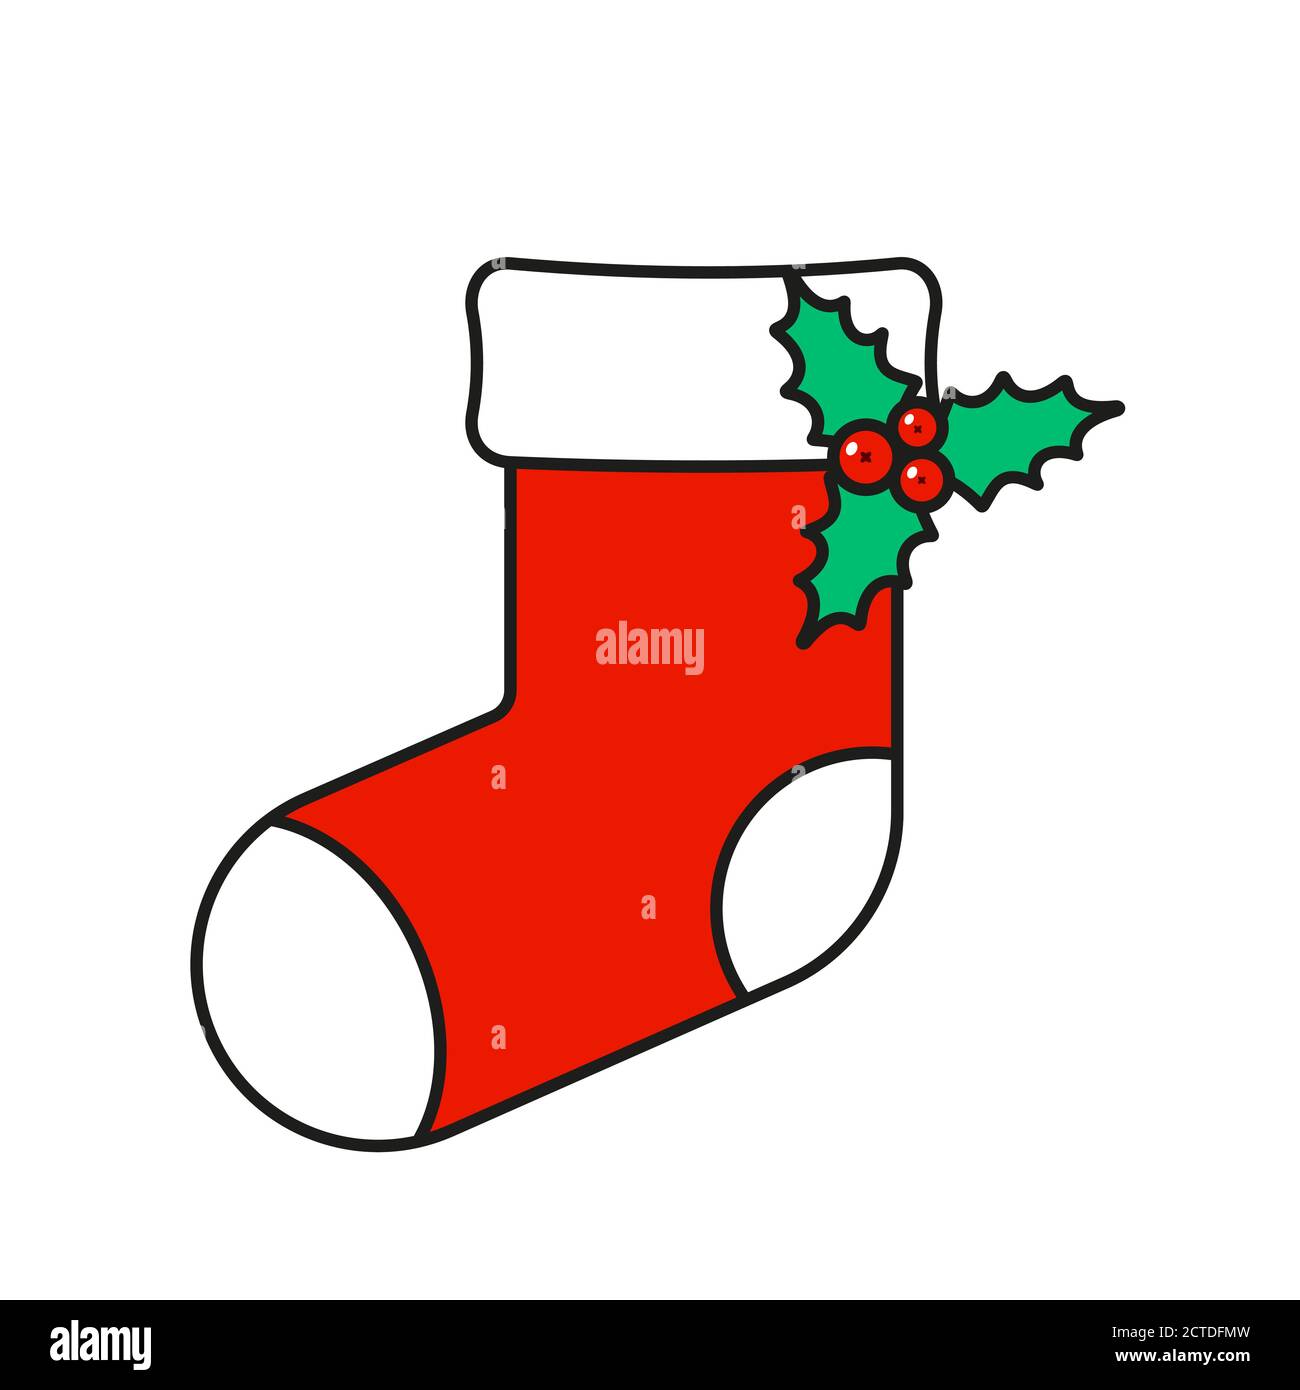 Weihnachtssocke mit Mistel isoliert auf weiß Stock-Vektorgrafik - Alamy